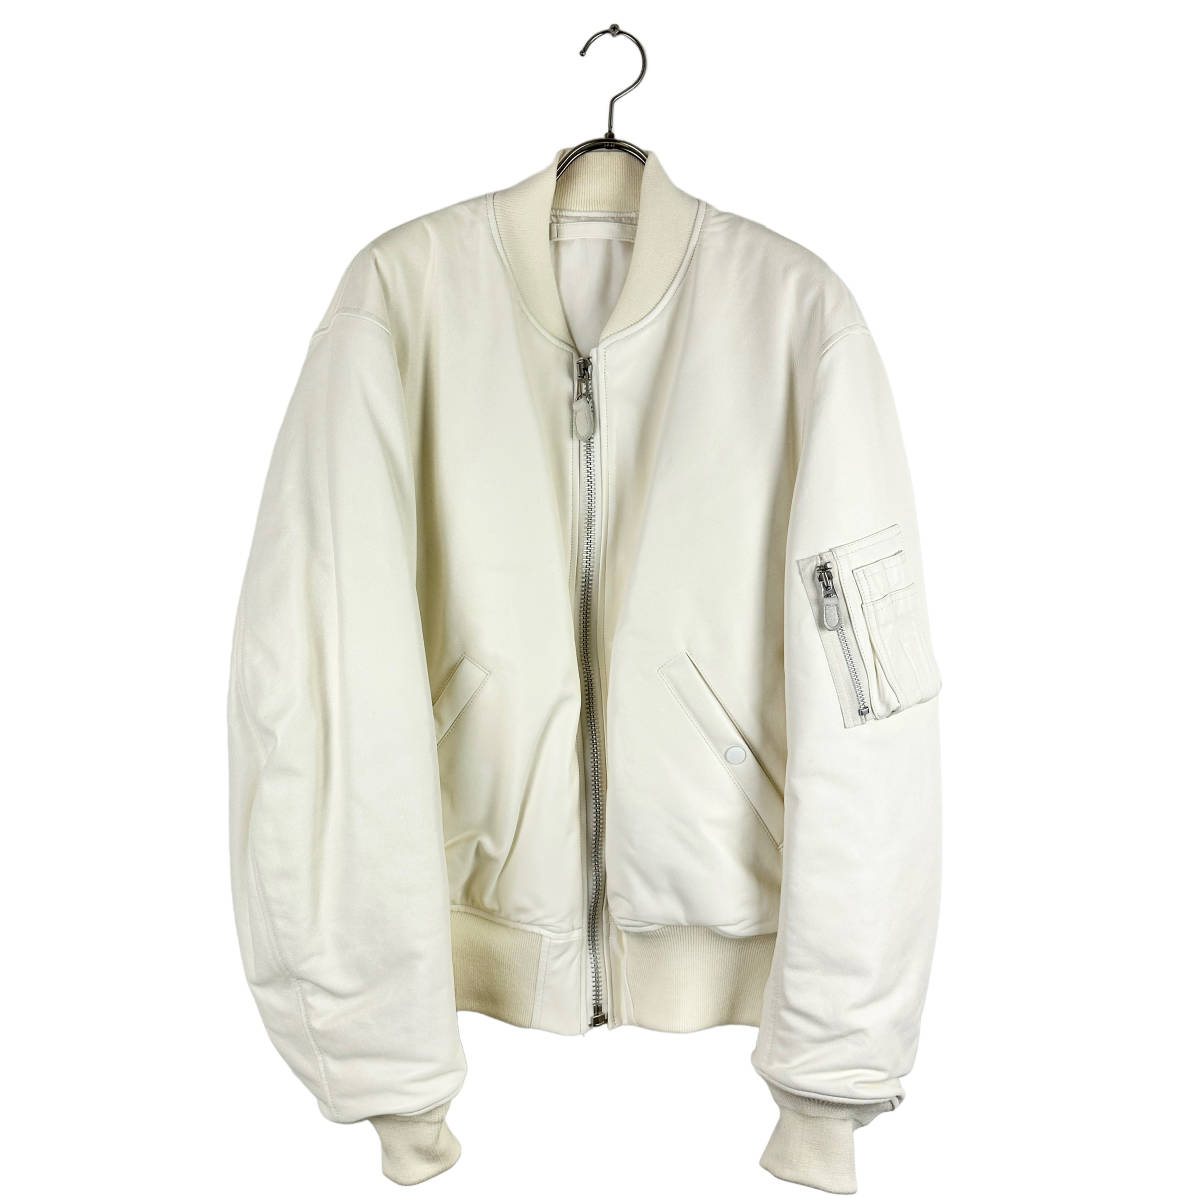 COMOLI (コモリ) leather bomber jacket (white)-